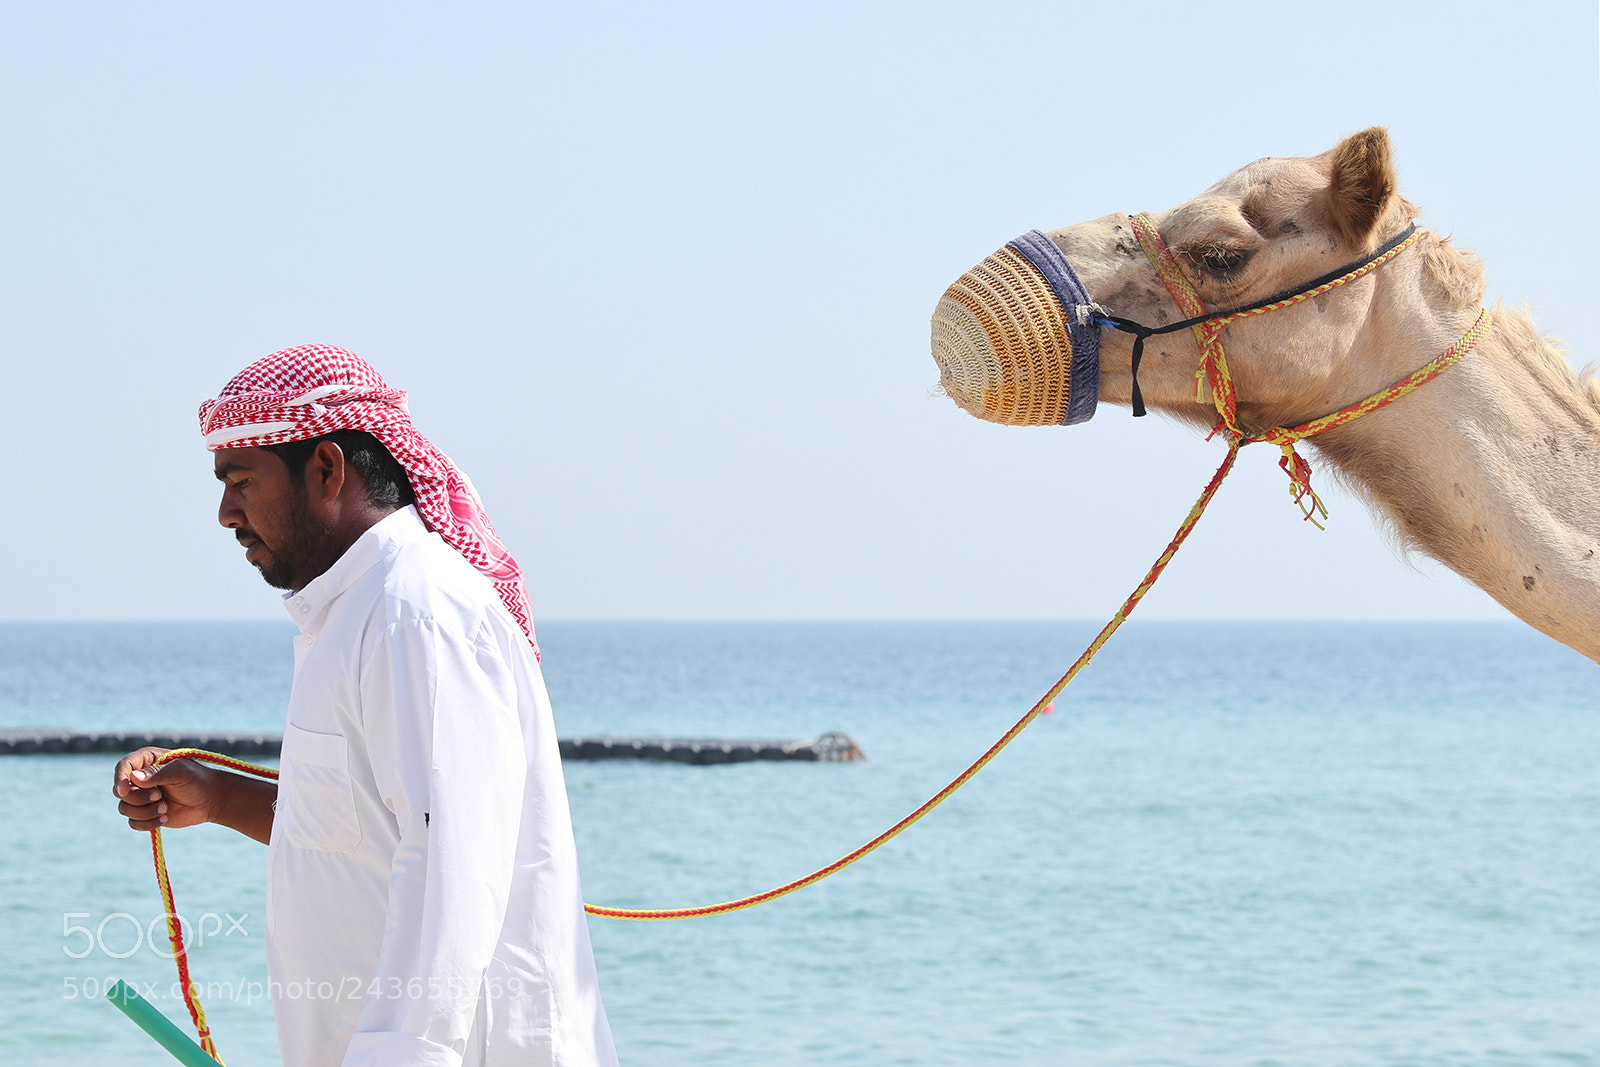 Canon EOS M6 sample photo. Camel photography